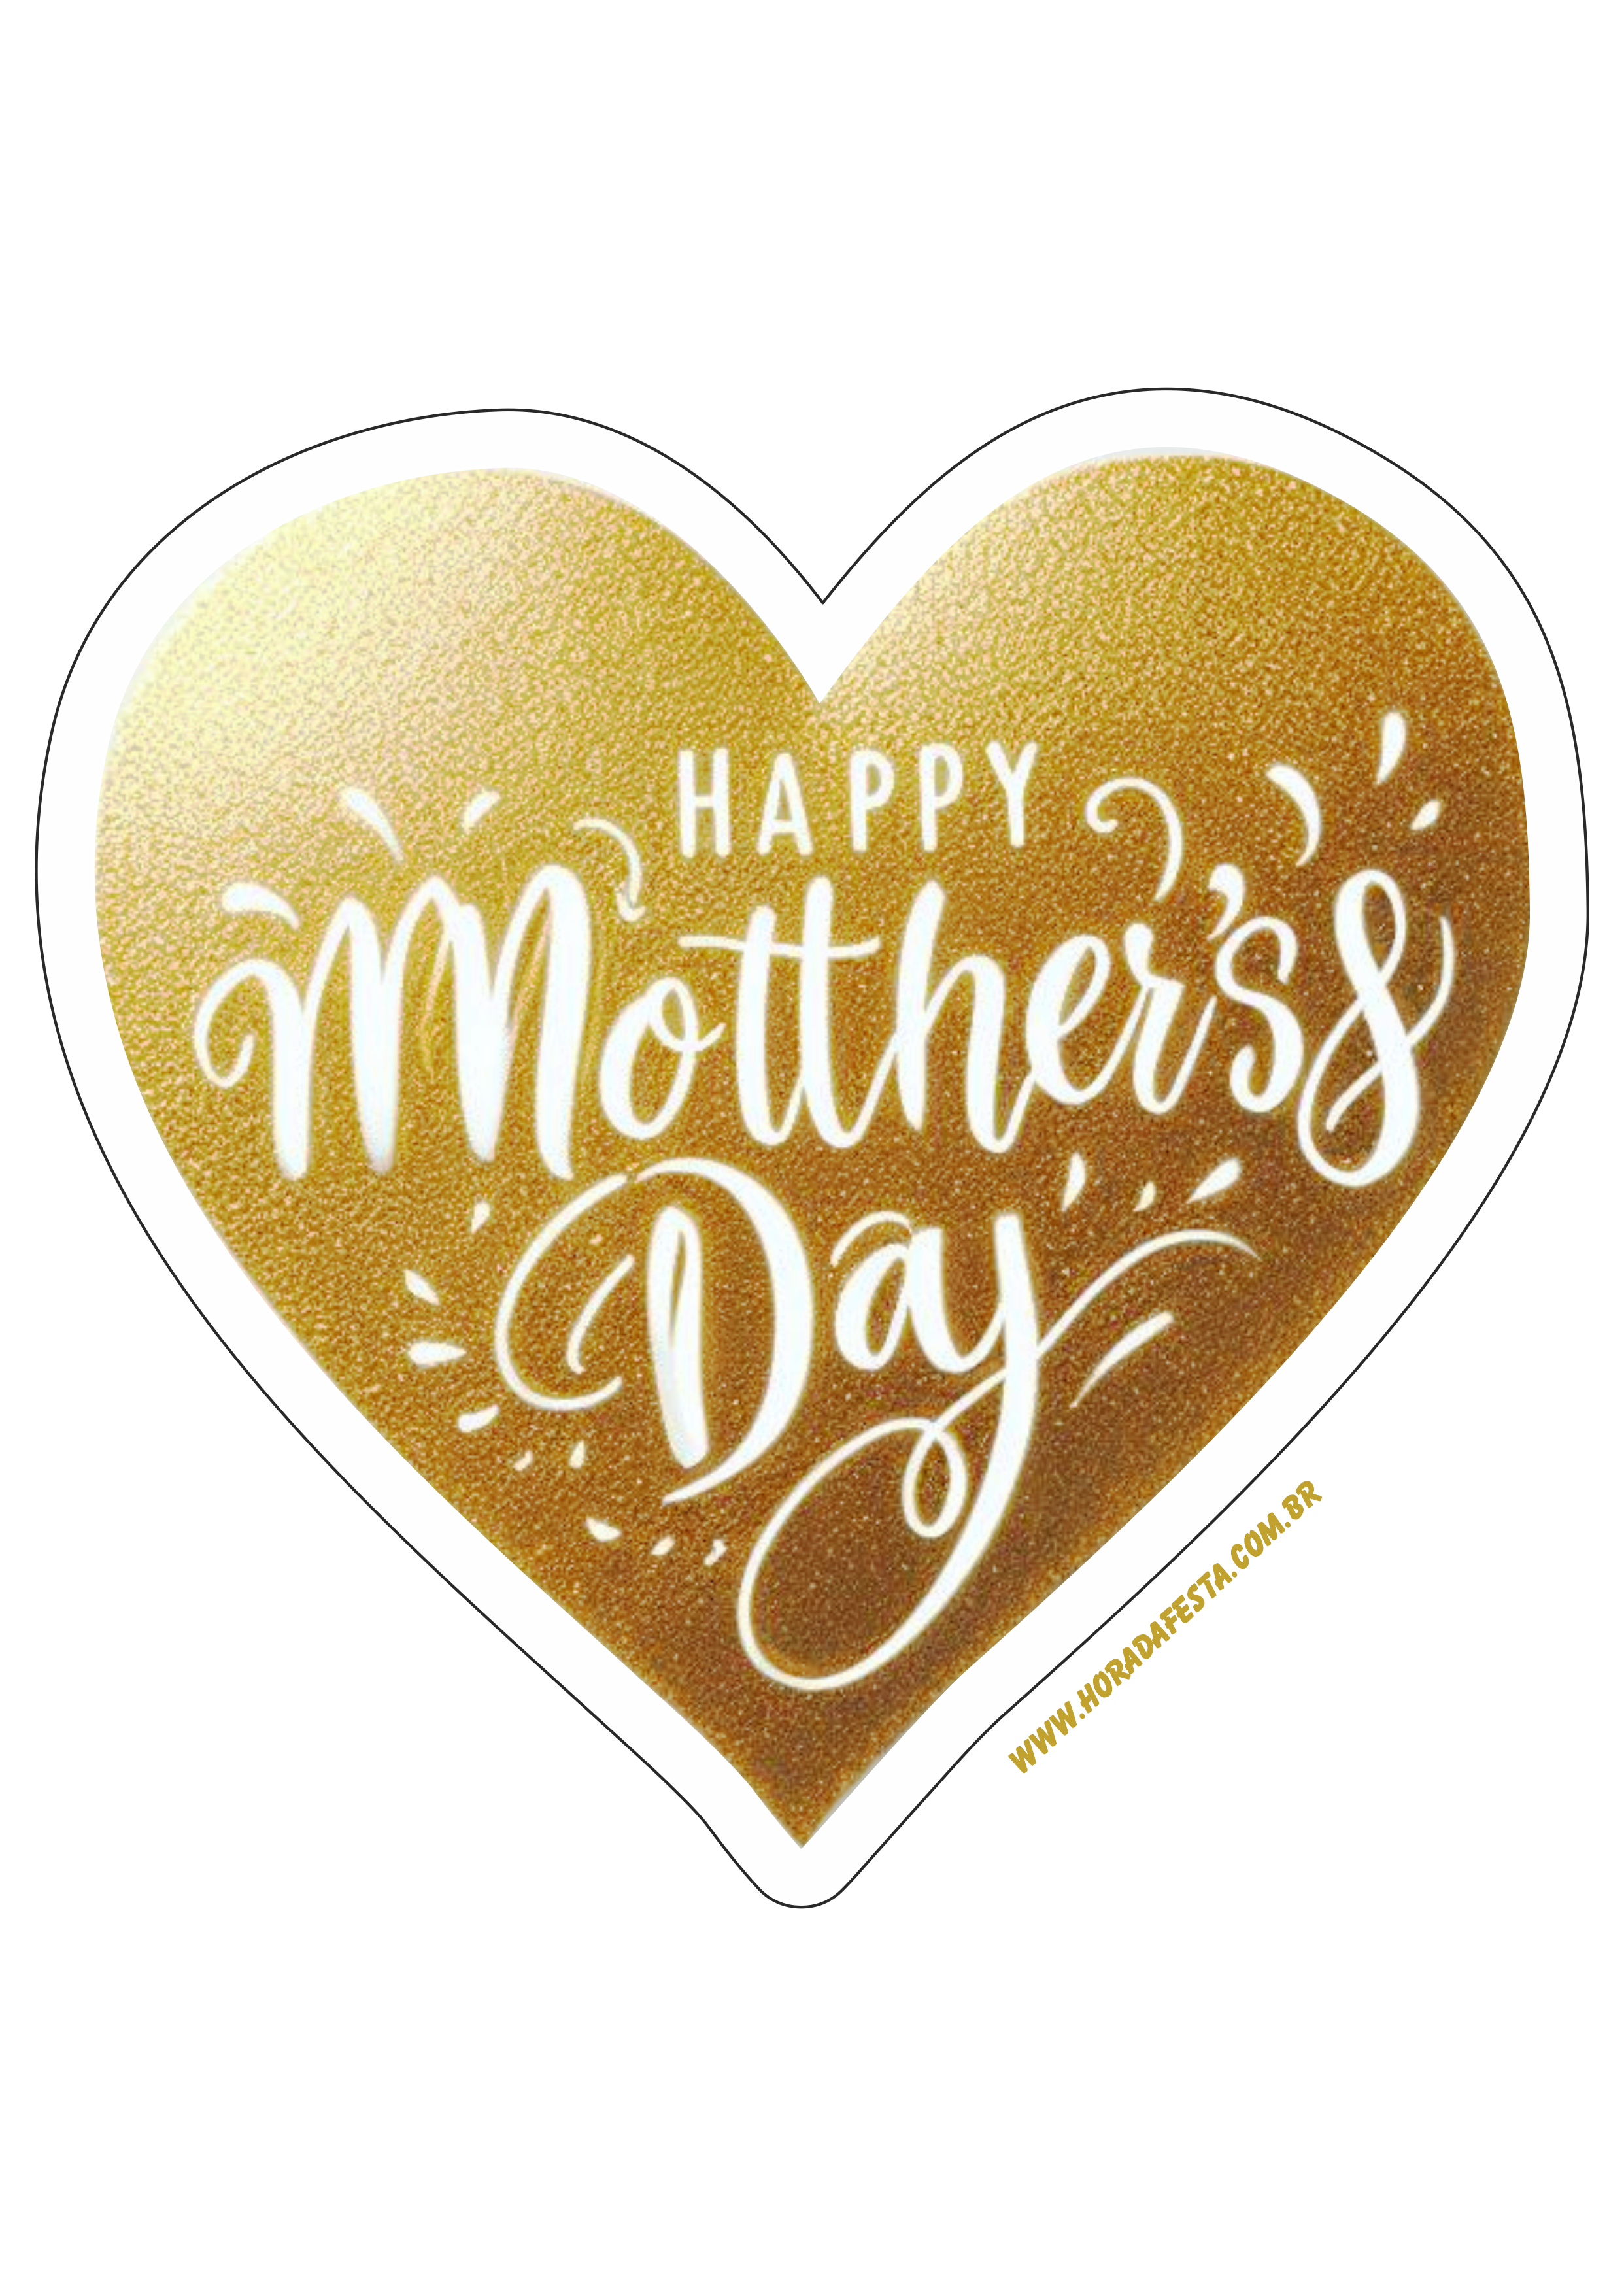 Feliz dia das mães adesivo de coração dourado para decoração happy mother’s day artes gráficas papelaria criativa png